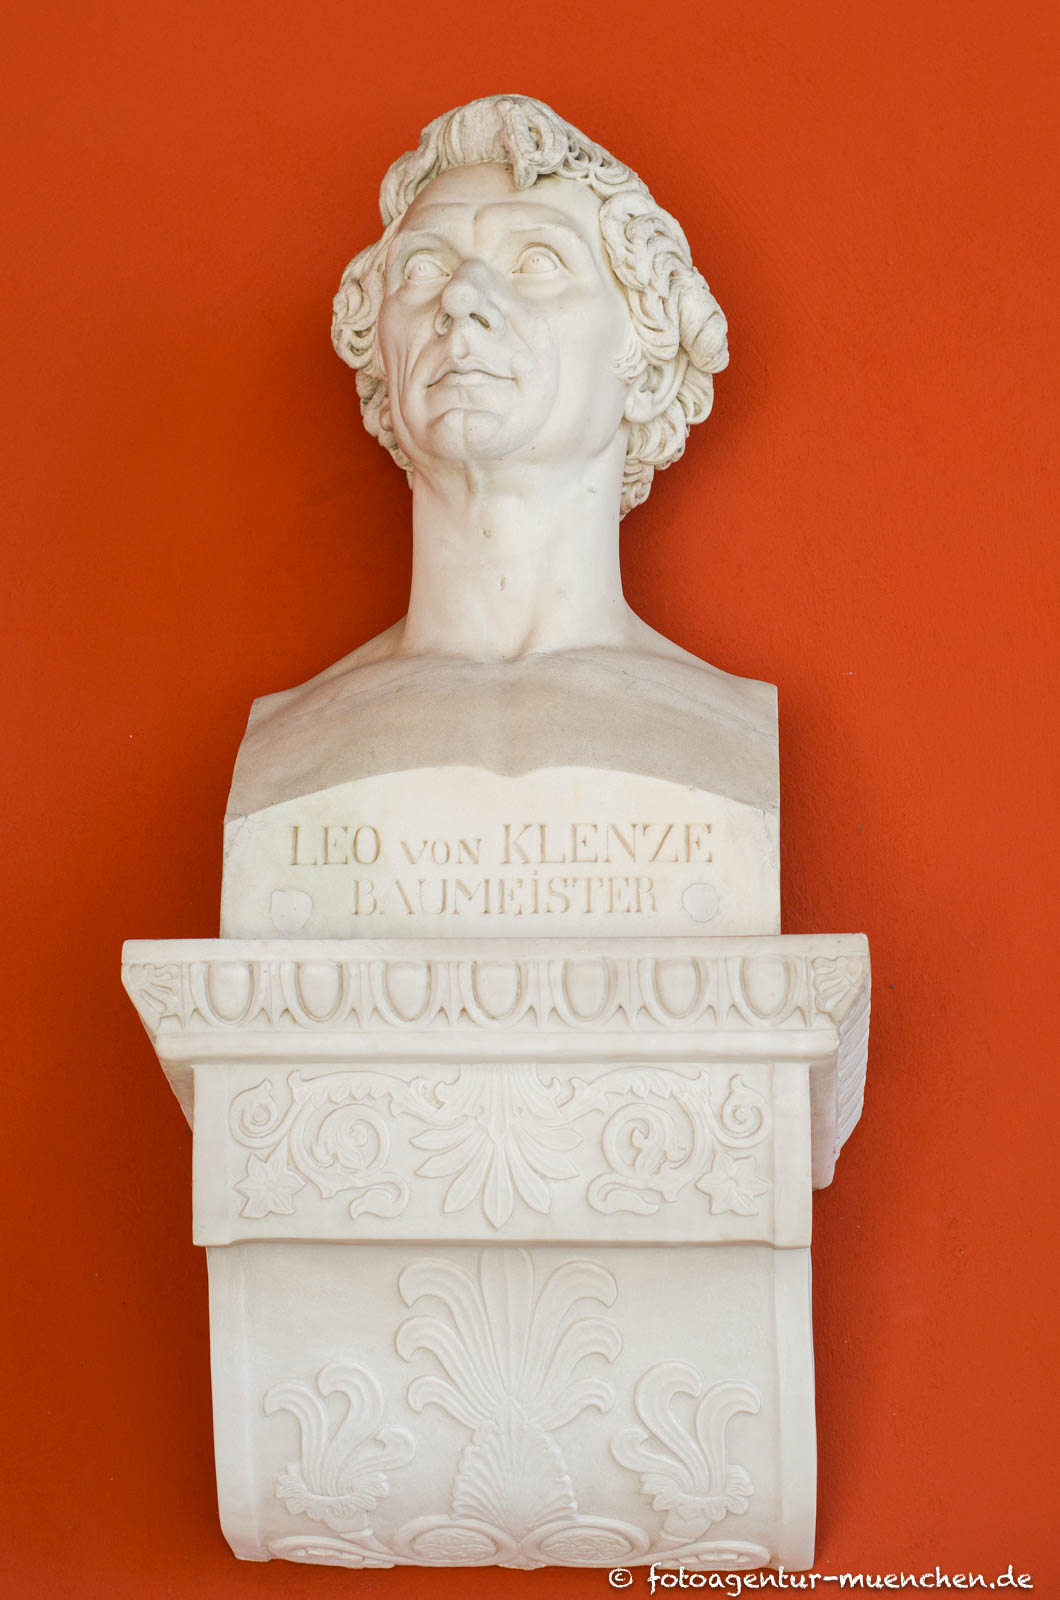 Leo von Klenze 